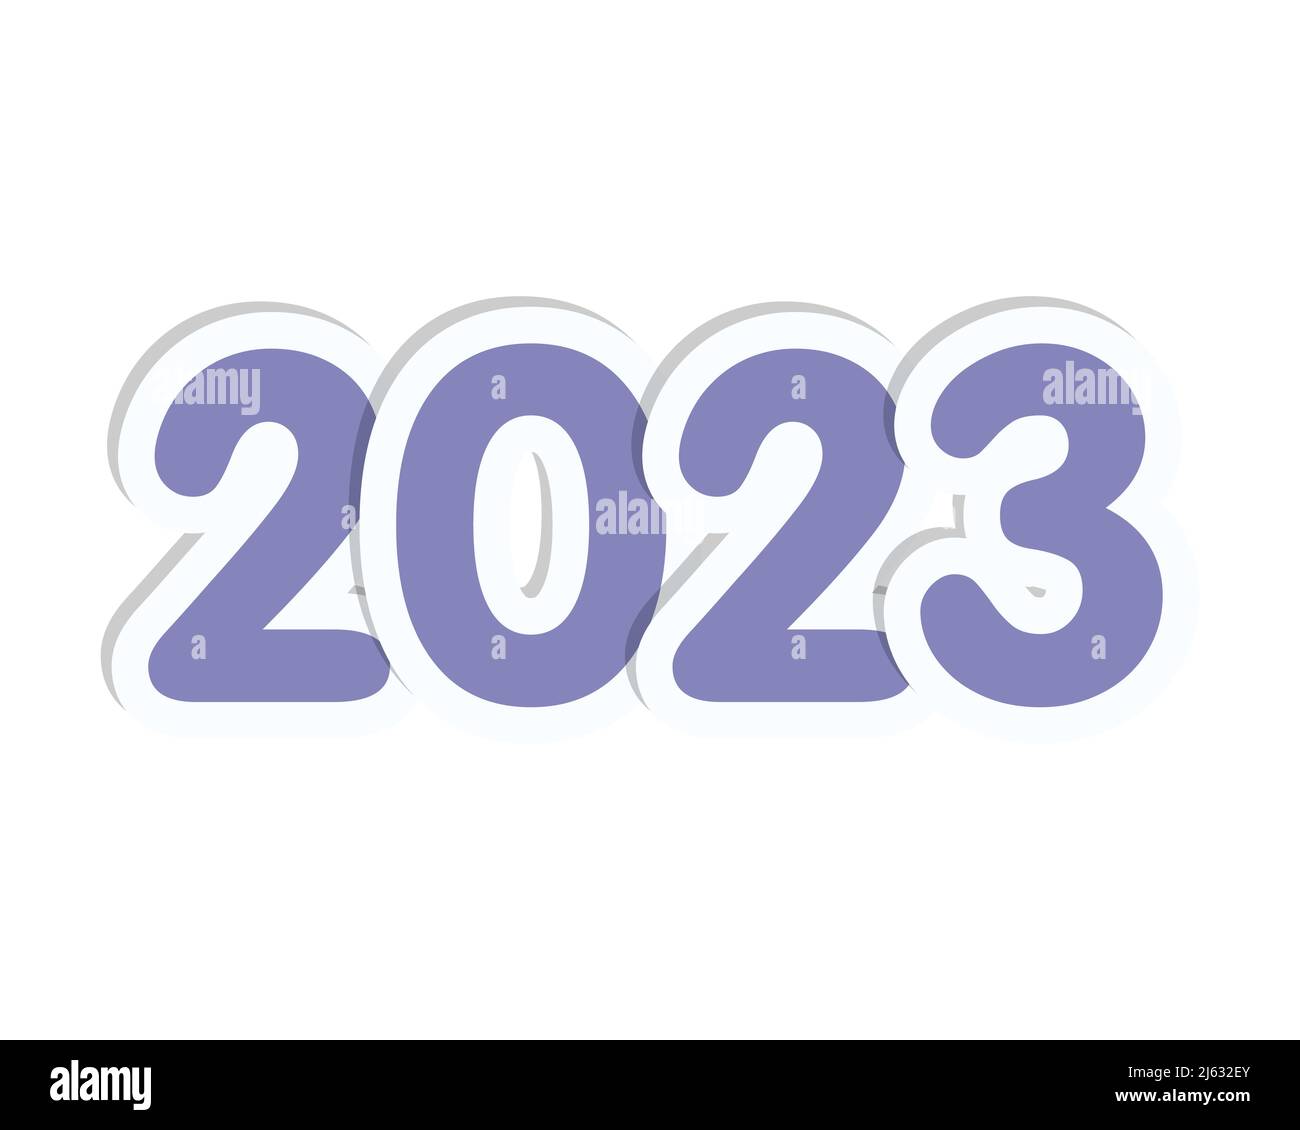 Autocollant nouvel an 2023 avec chiffres et lapin, isolé, fond blanc. Illustration vectorielle Illustration de Vecteur